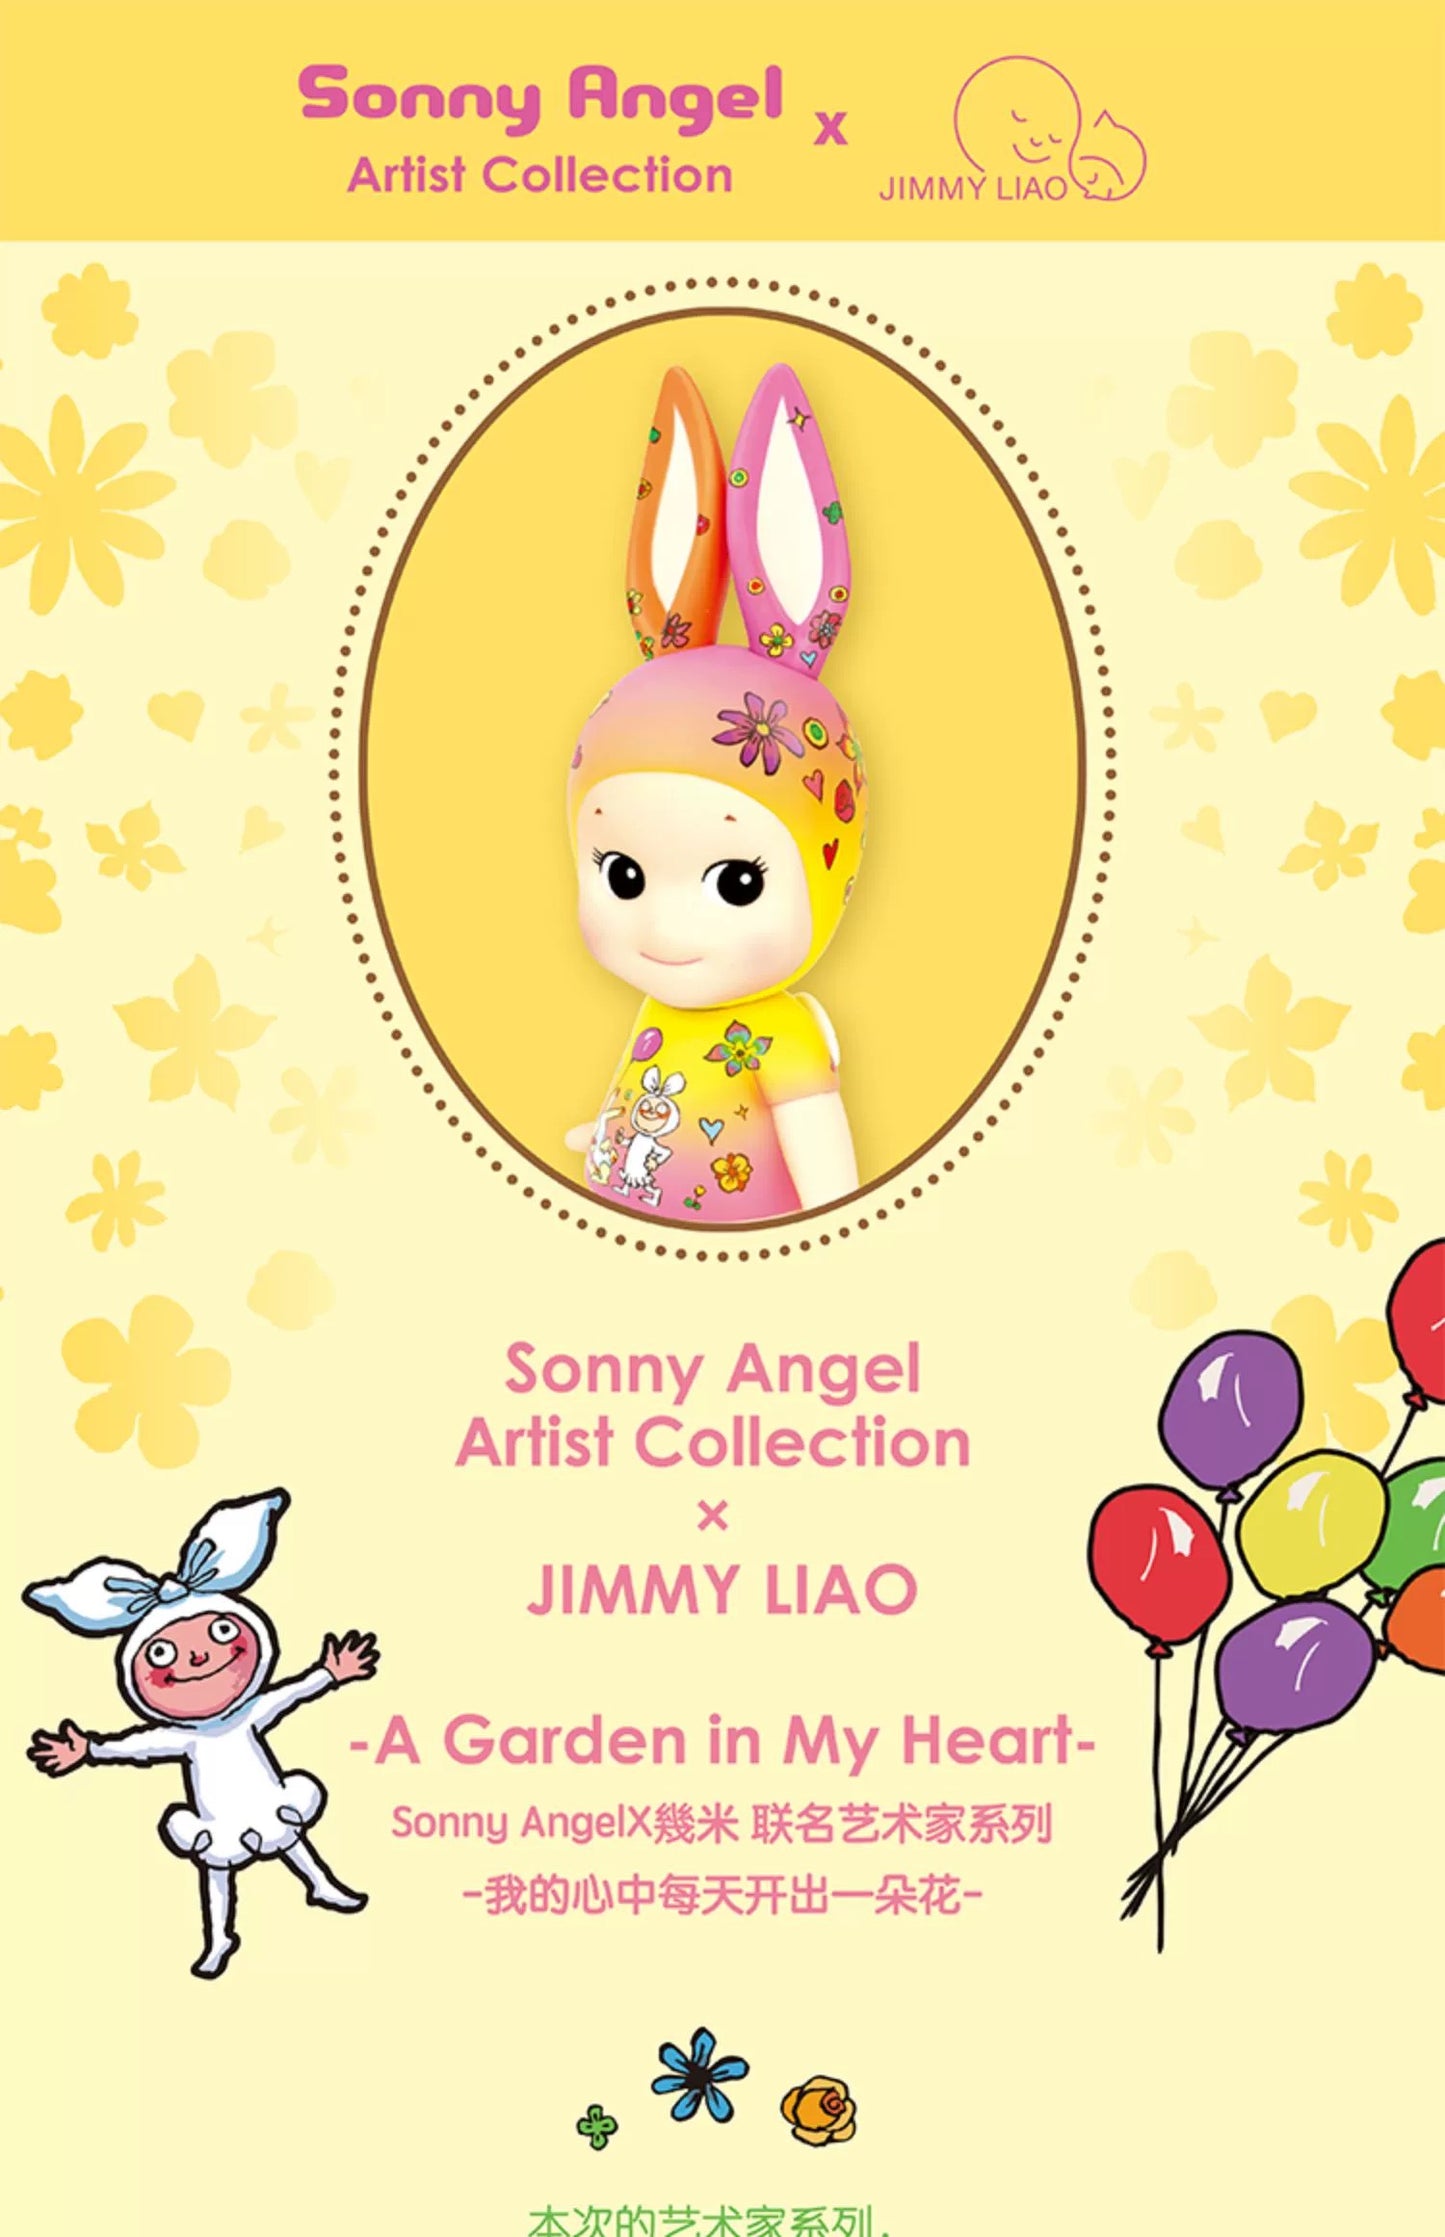 Sonny Angel - Jimmy Artist - A Garden in My Heart